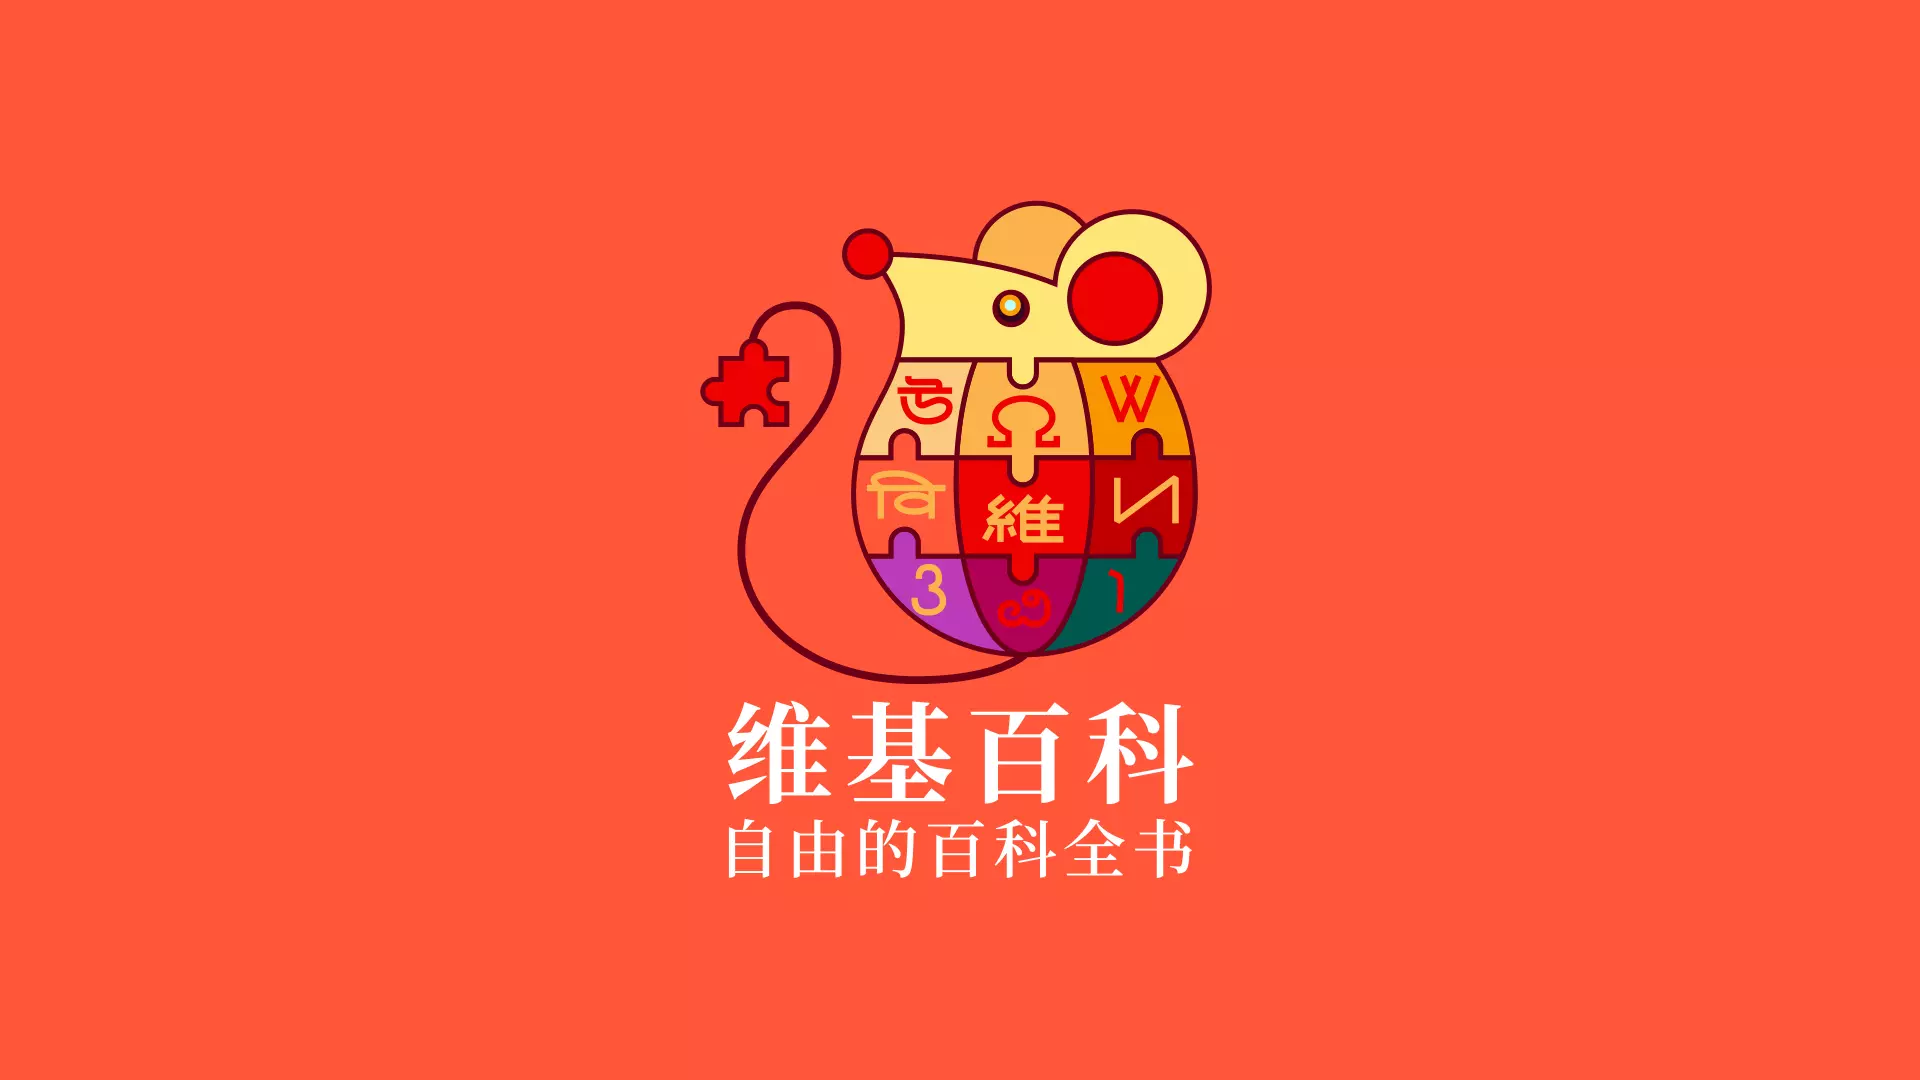 维基百科推出中国春节「鼠形拼图」主题LOGO